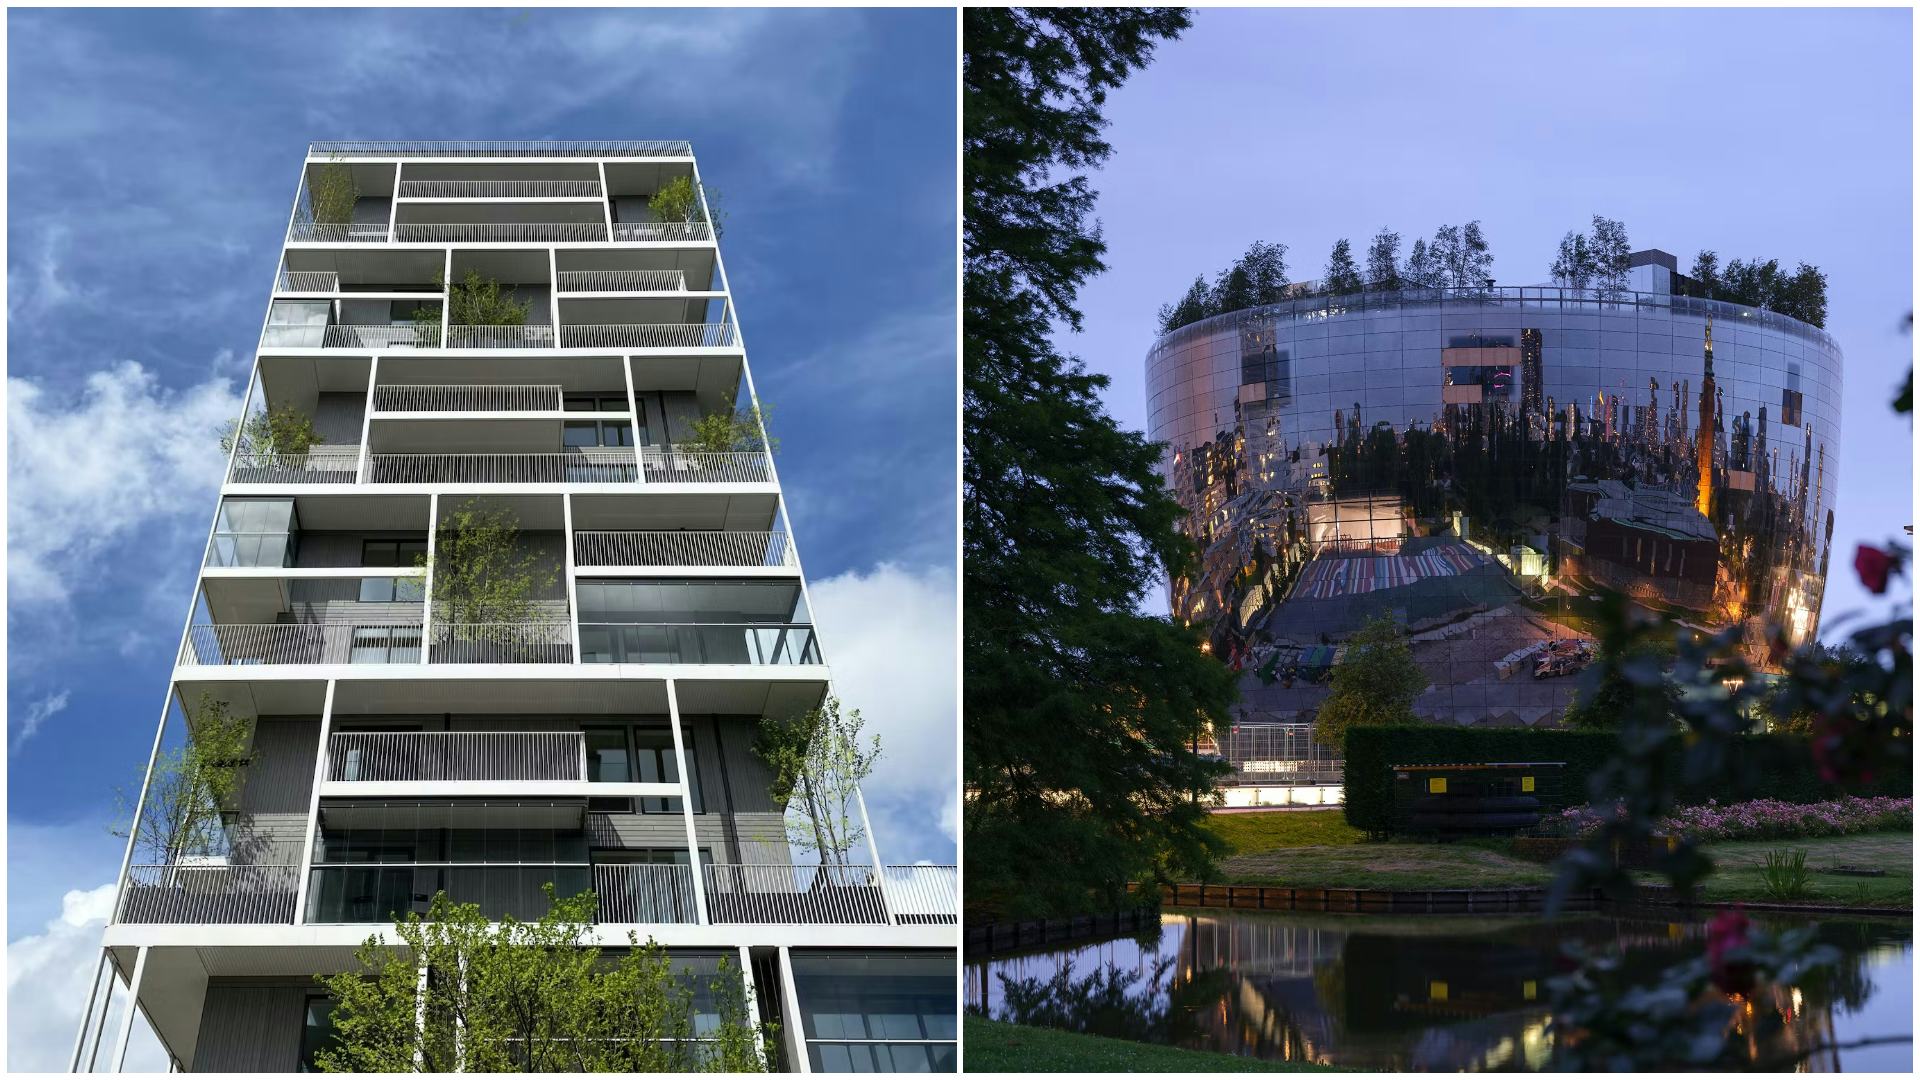 Links Stories door Olaf Gisper Architects en rechts het Depot Boijmans van Beuningen door MVRDV. Beeld Ossip